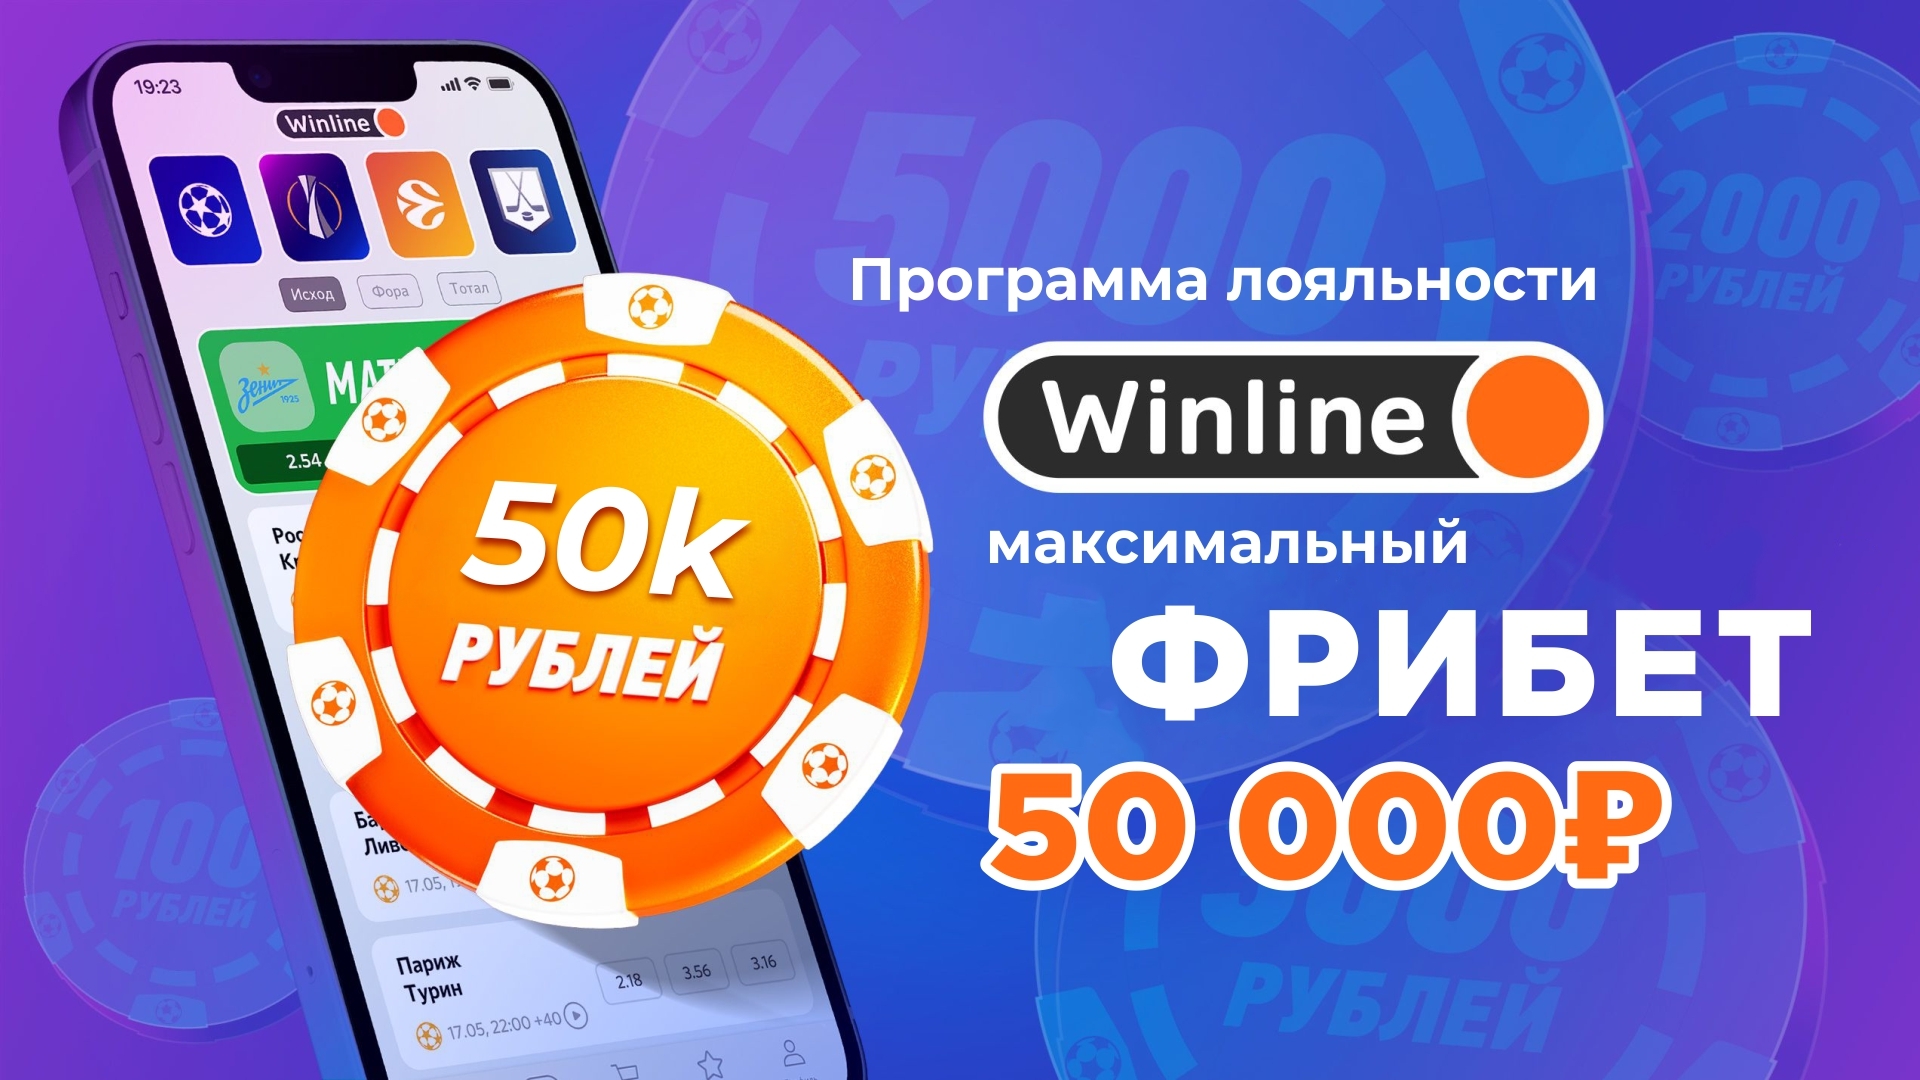 Фрибет в Винлайн: до 50000 рублей за участие в программе лояльности